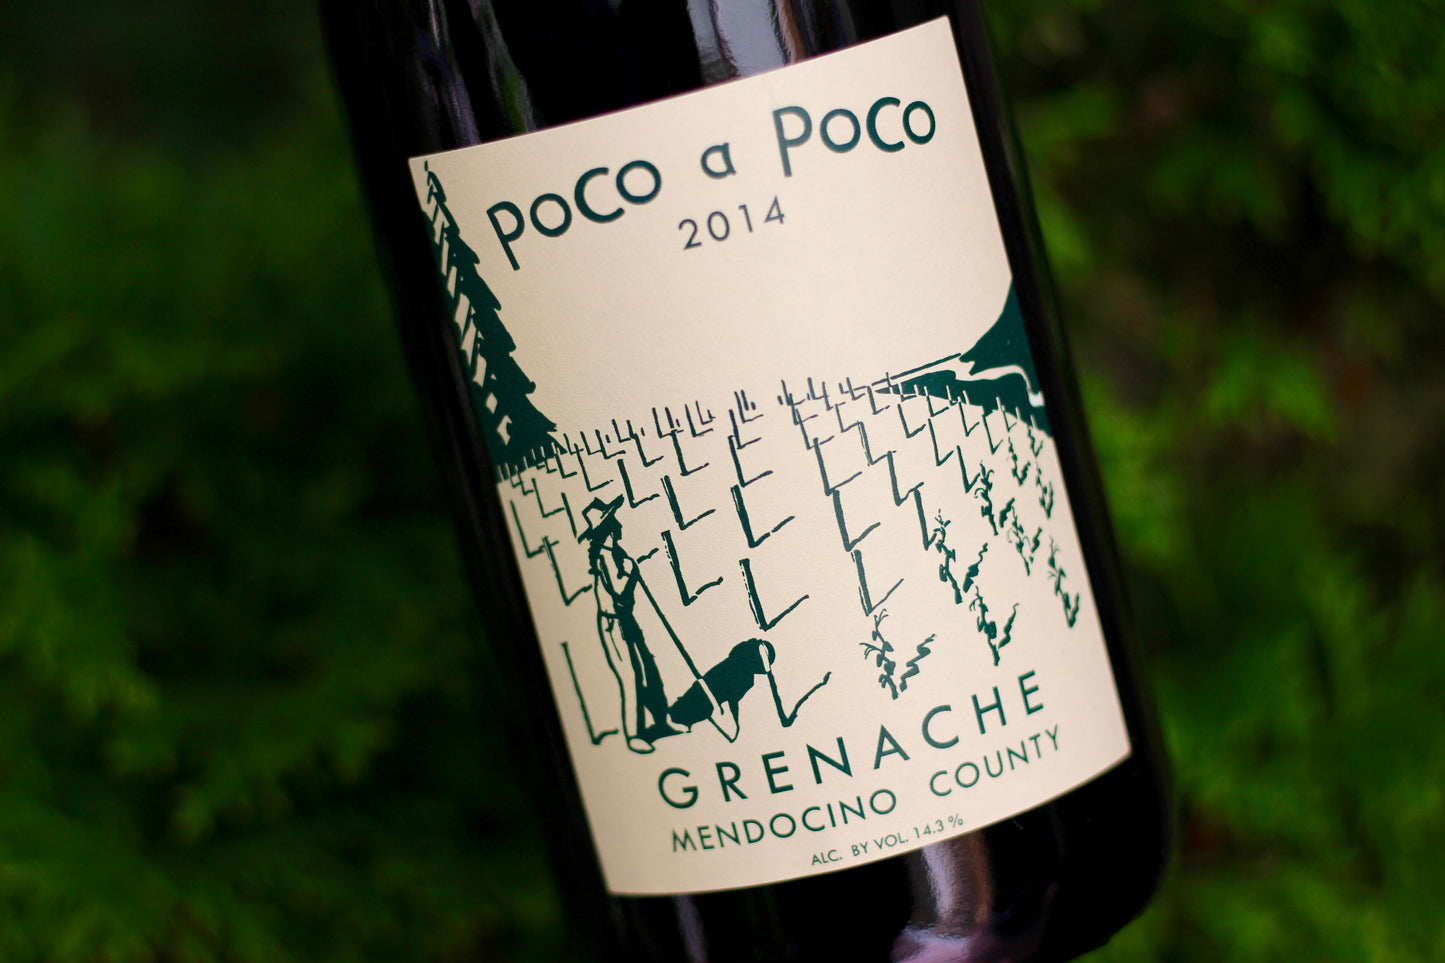 2014 Poco a Poco Grenache - Rock Juice Inc